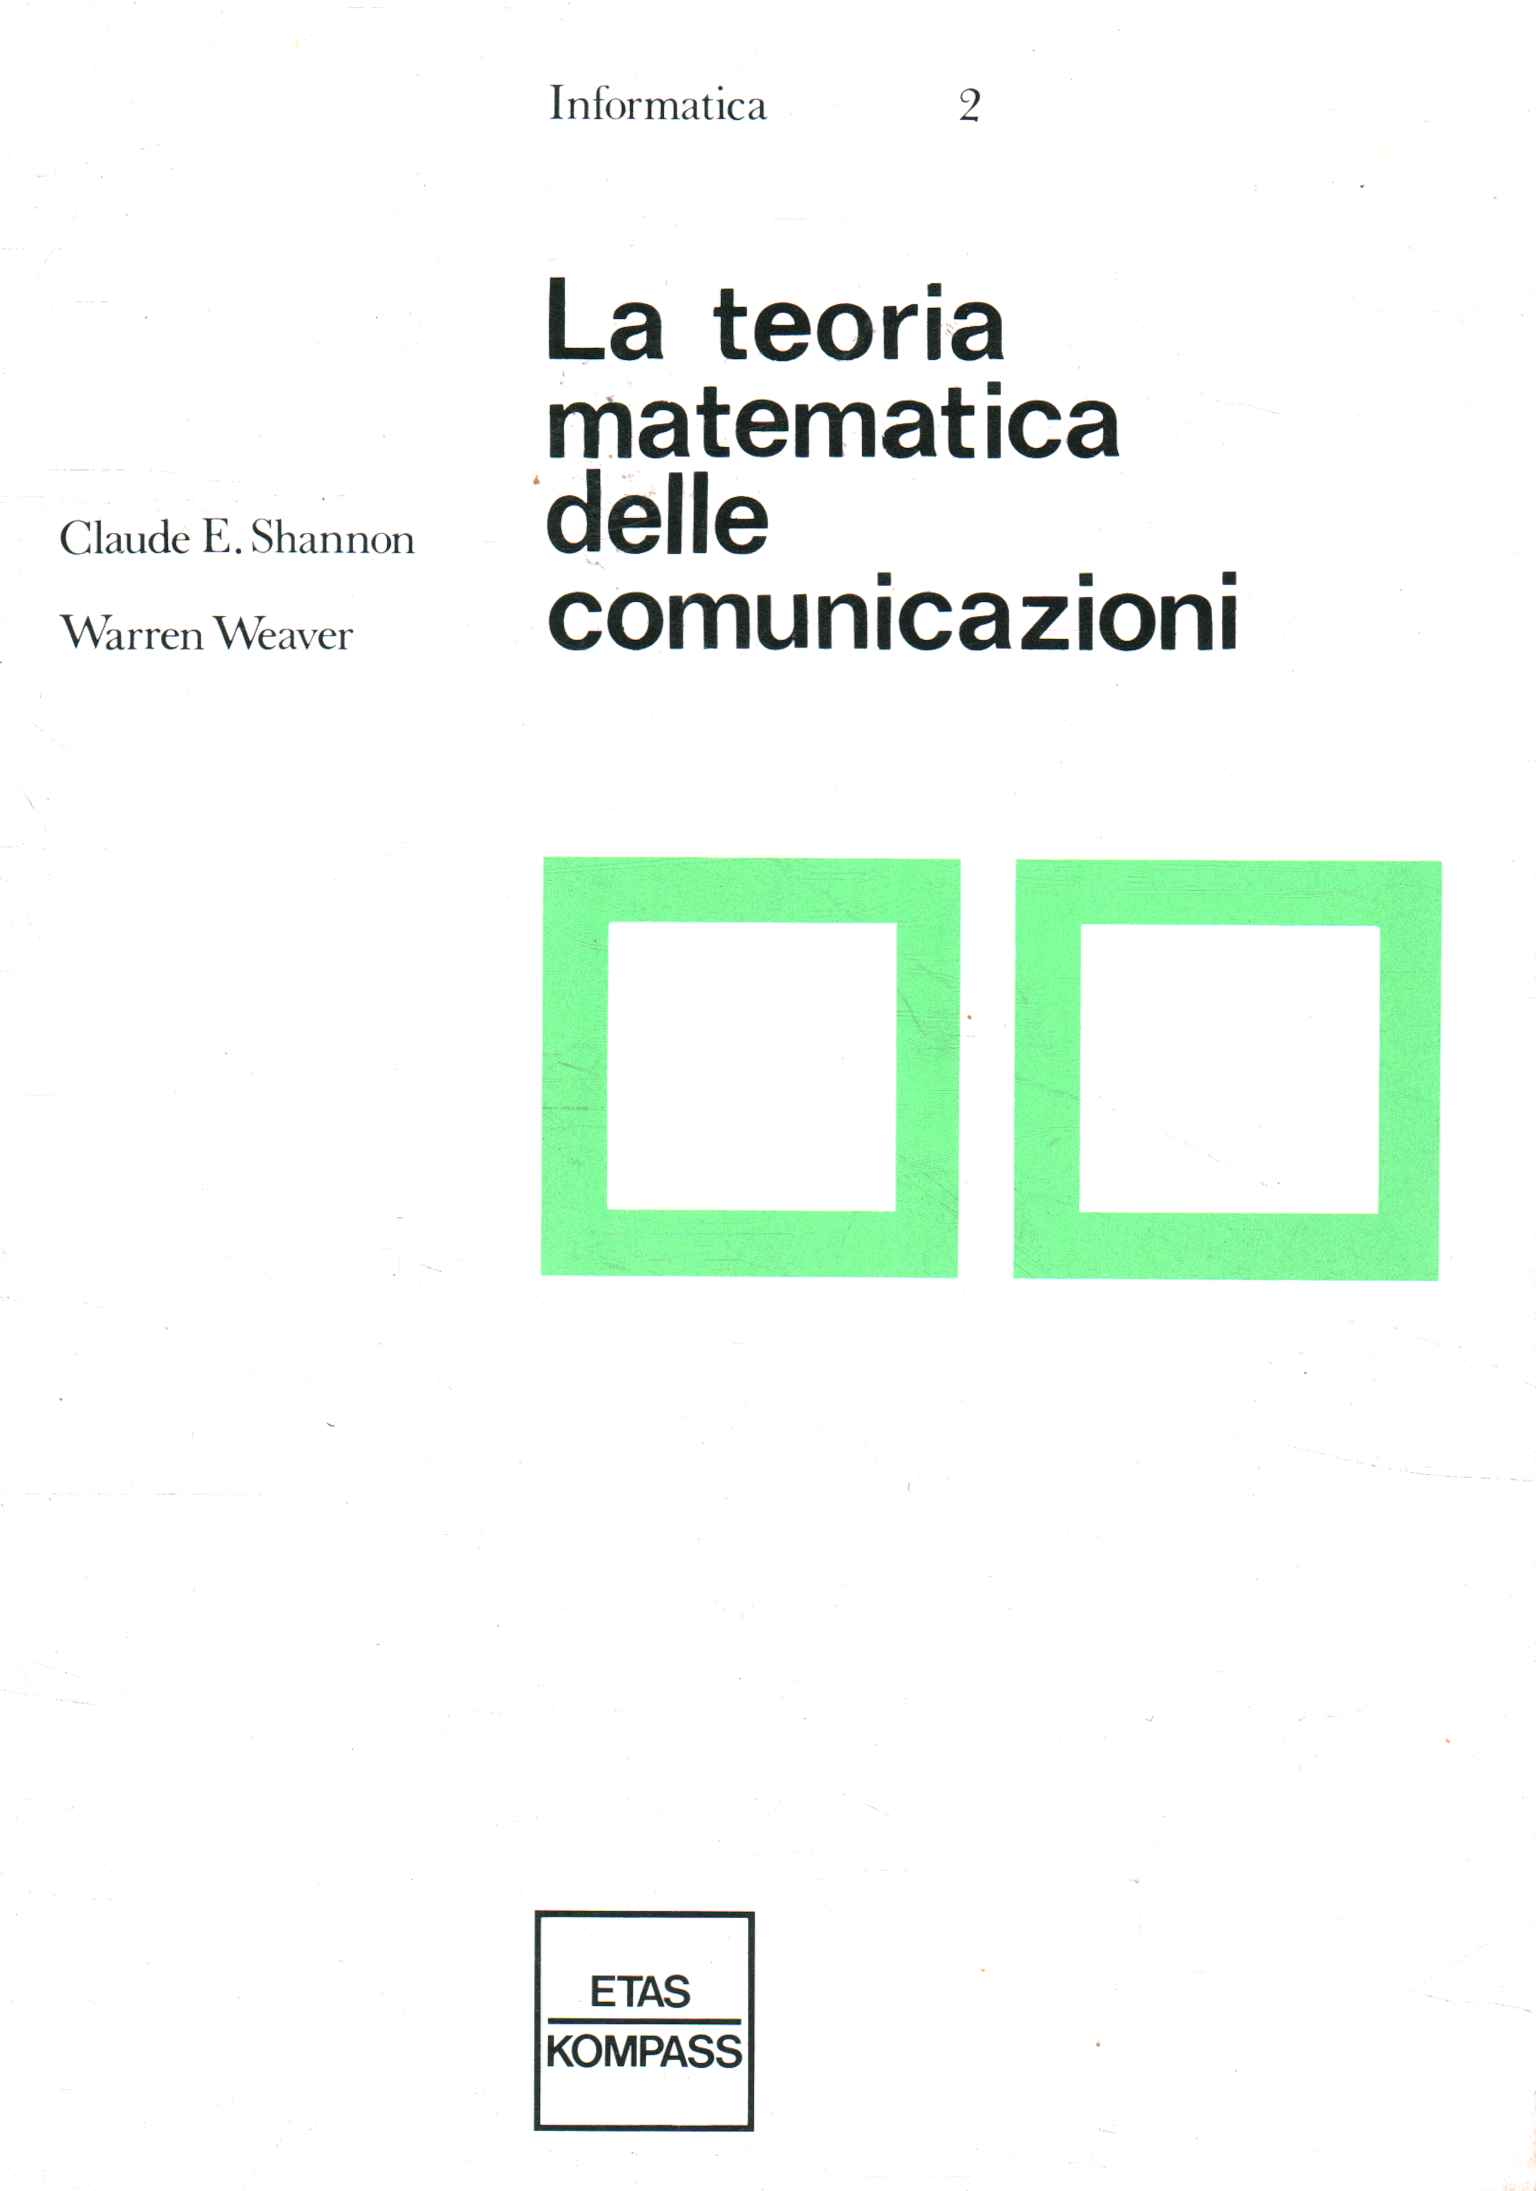 Die mathematische Theorie der Kommunikation